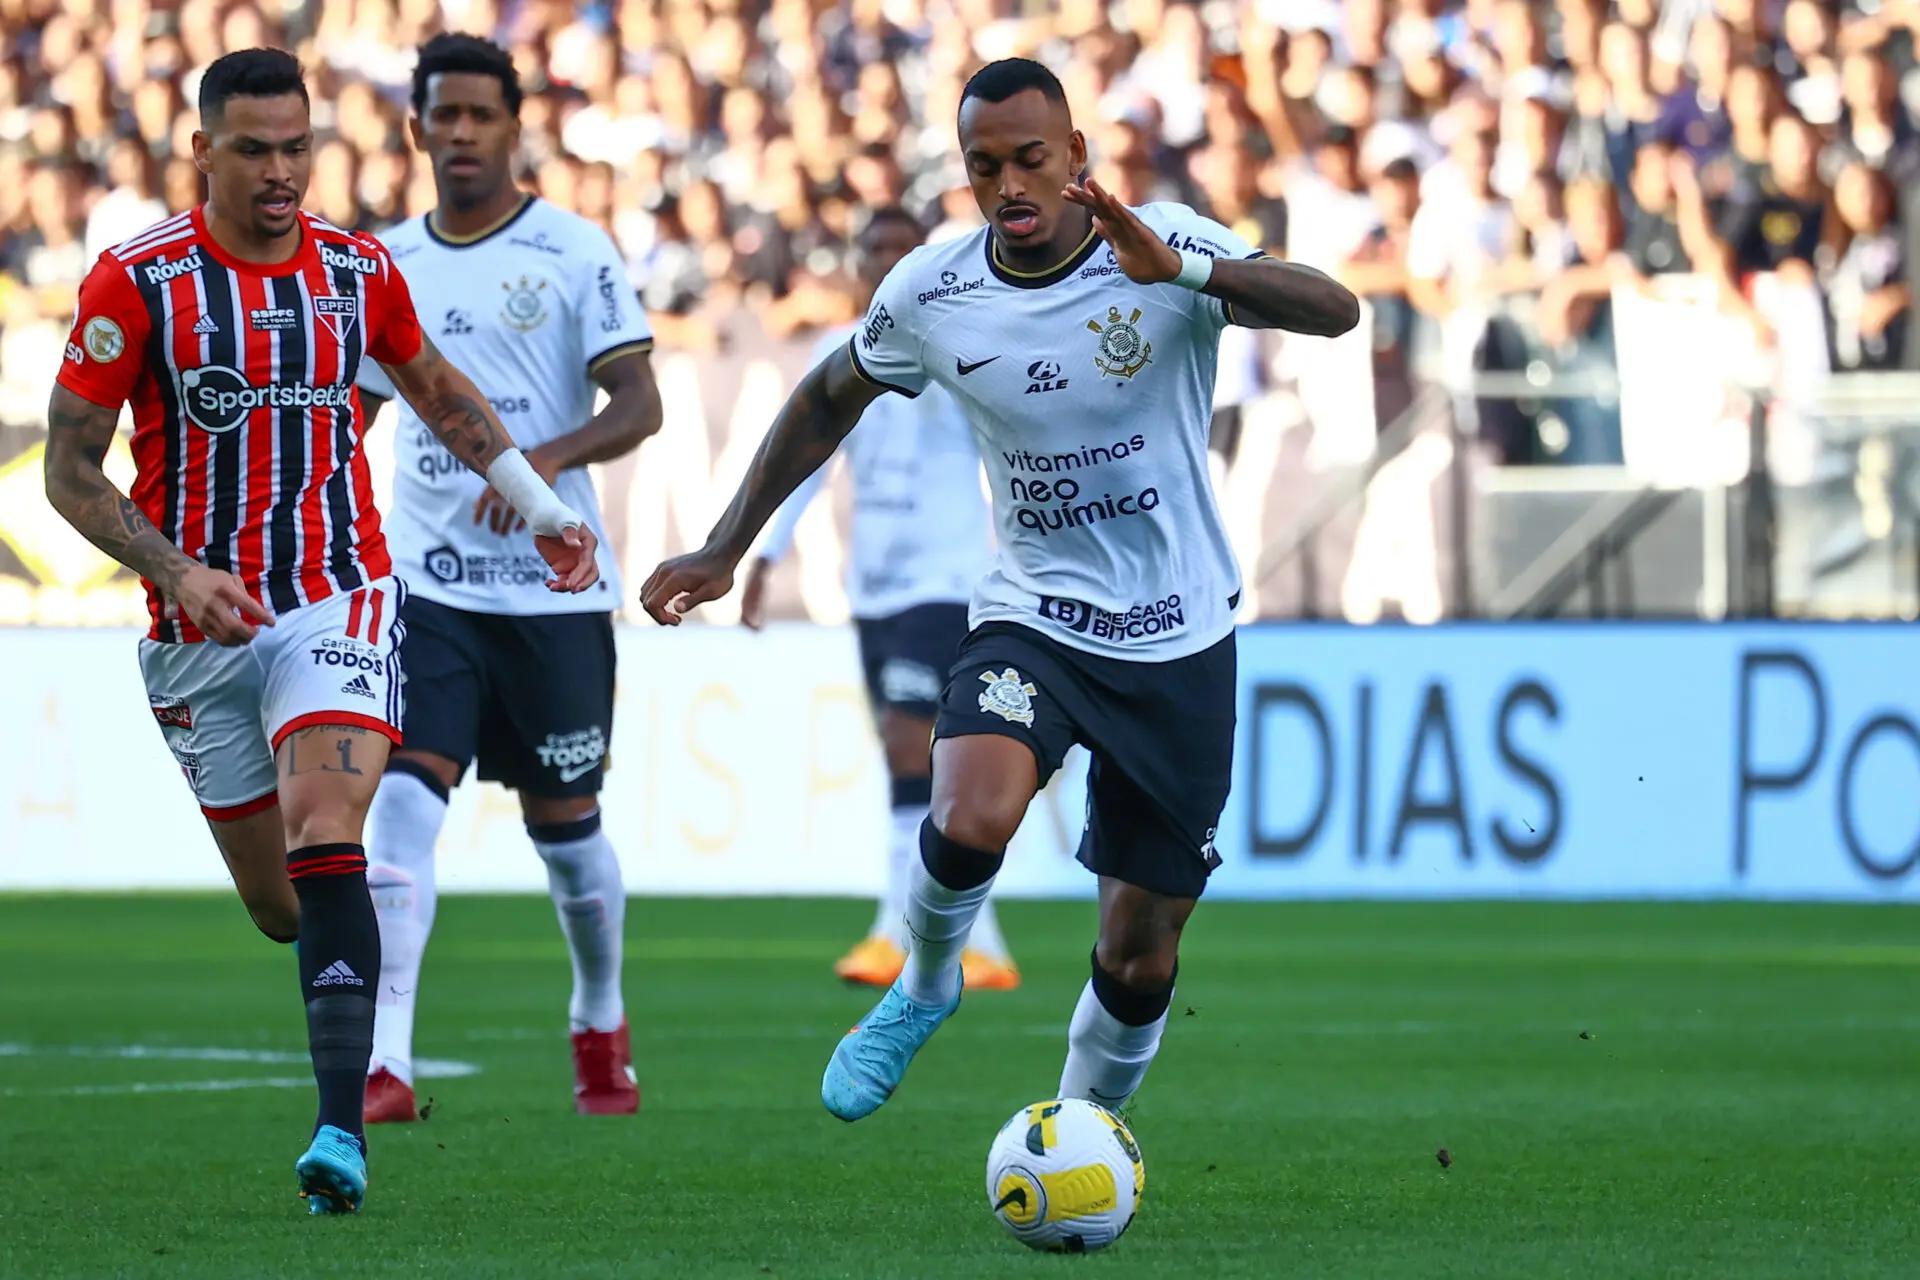 Corinthians busca empate, mas sai da briga pelo segundo lugar